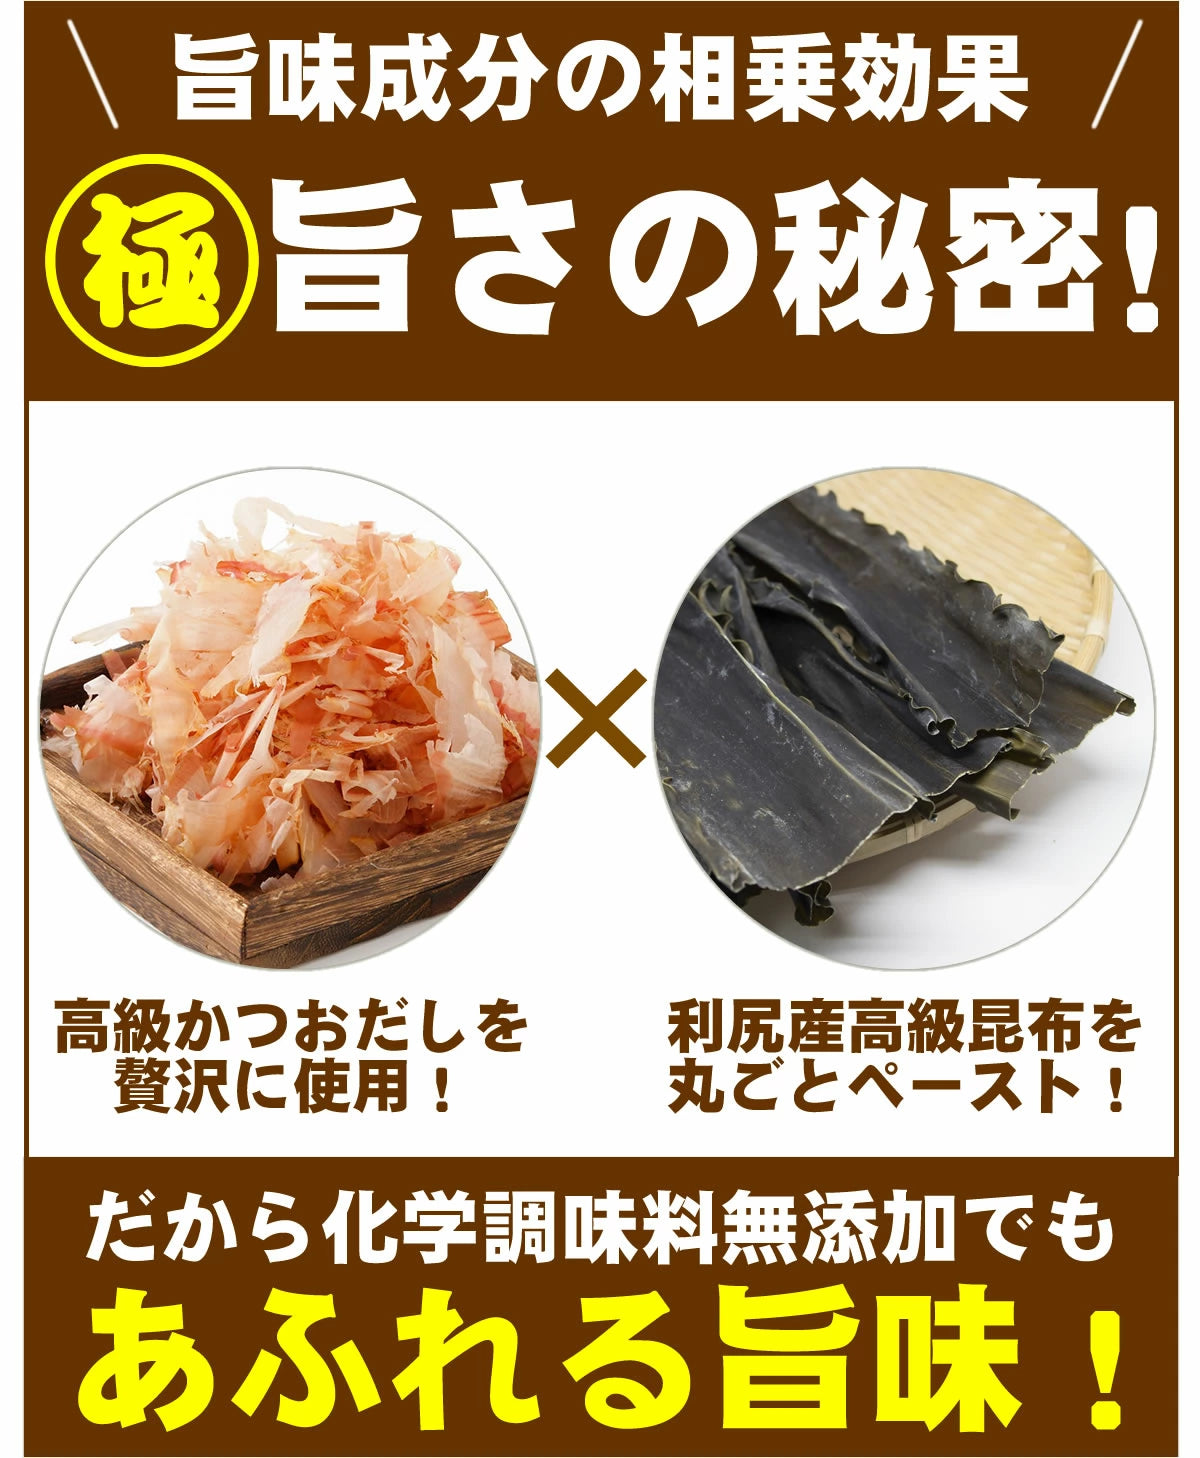 【初回限定】 送料無料 無添加 飲む かける つける  酢 北海道 昆布酢 極